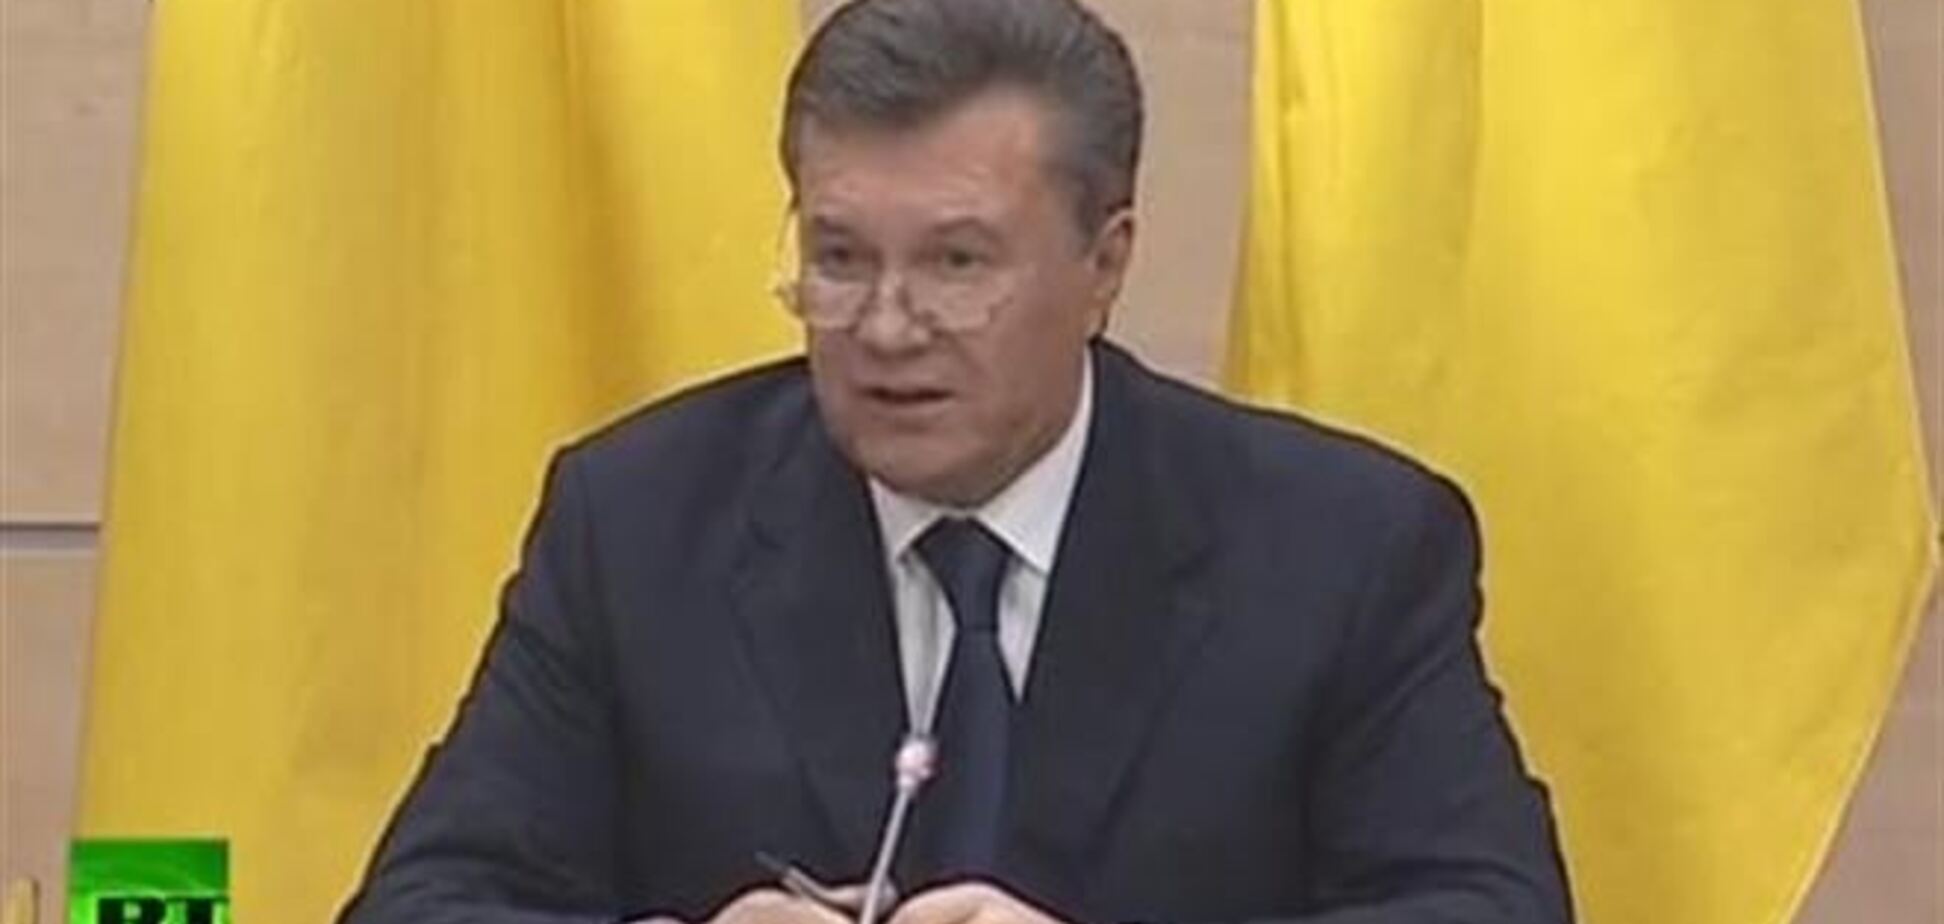 Янукович: угоду давало надію, але в підсумку все призвело до терору і хаосу